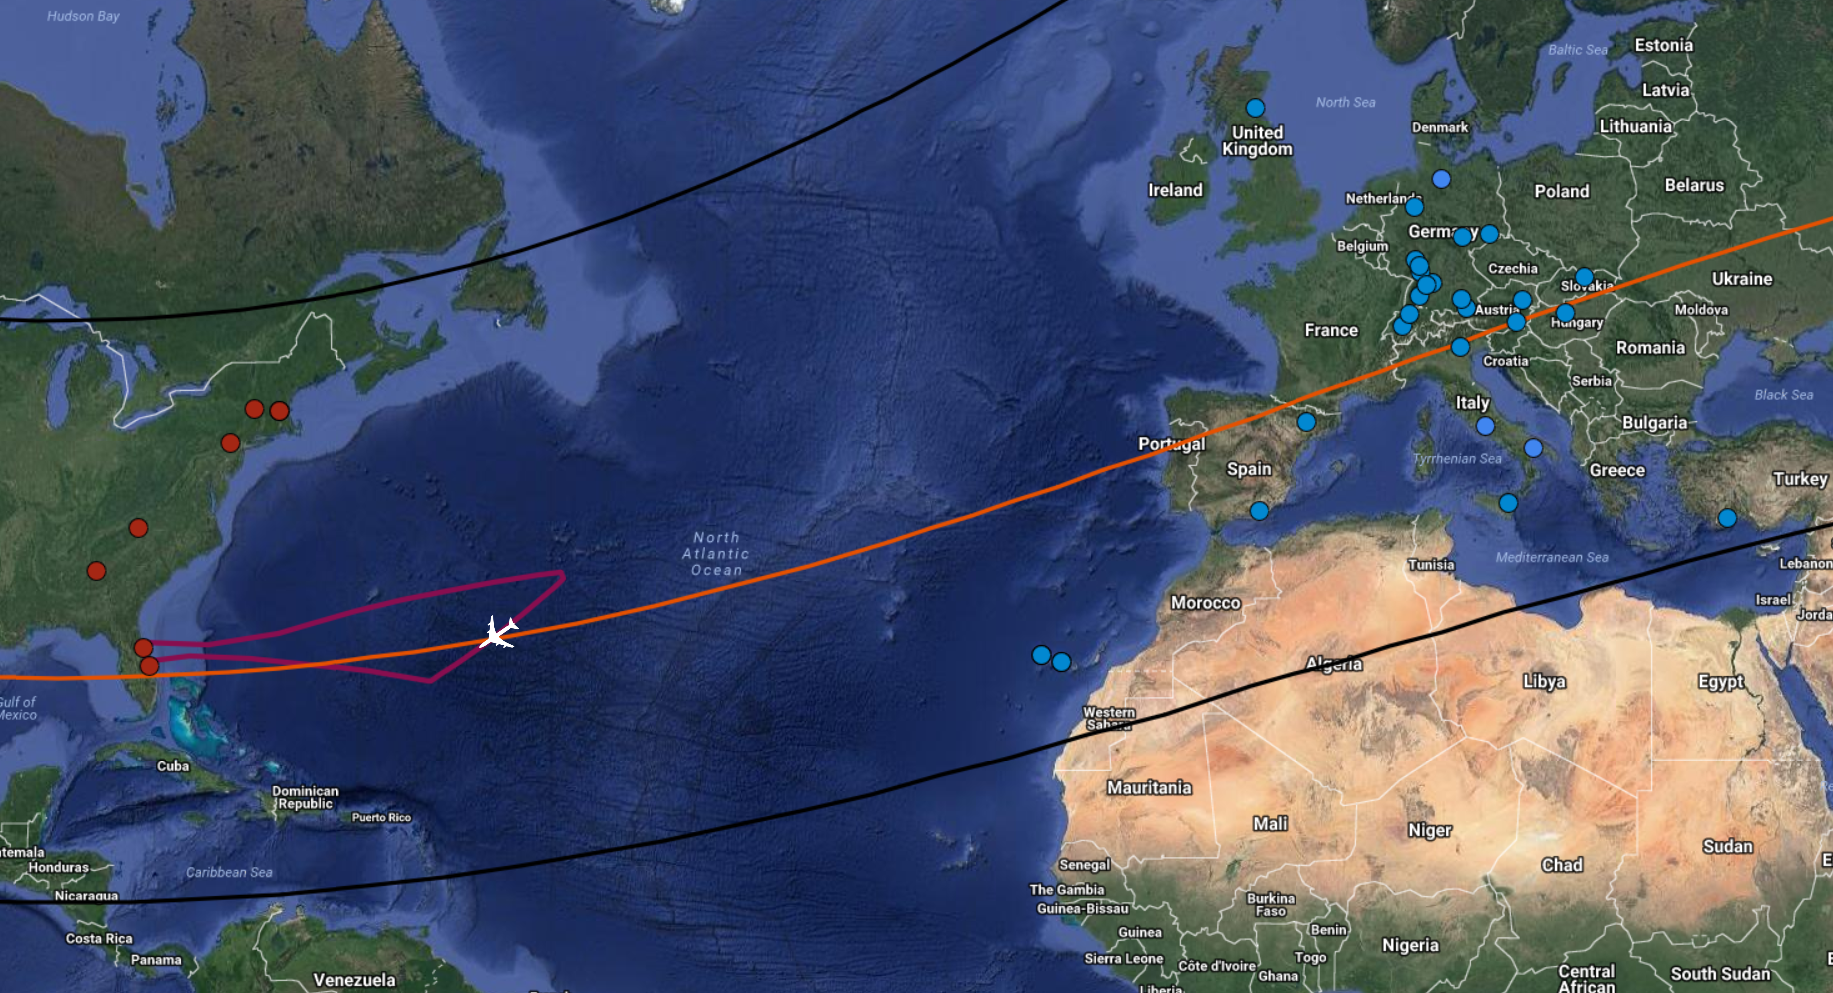 Границы тени Тритона обозначены чёрными линиями, оранжевая линия — центр этой тени. Красной линией показан маршрут самолёта, а точка двухминутного наблюдения за Тритоном обозначена рисунком самолёта. Красные и синие точки на карте — наземные обсерватории, которые также будут наблюдать за покрытием. Фото: © DSI/Karsten Schindler/NASA